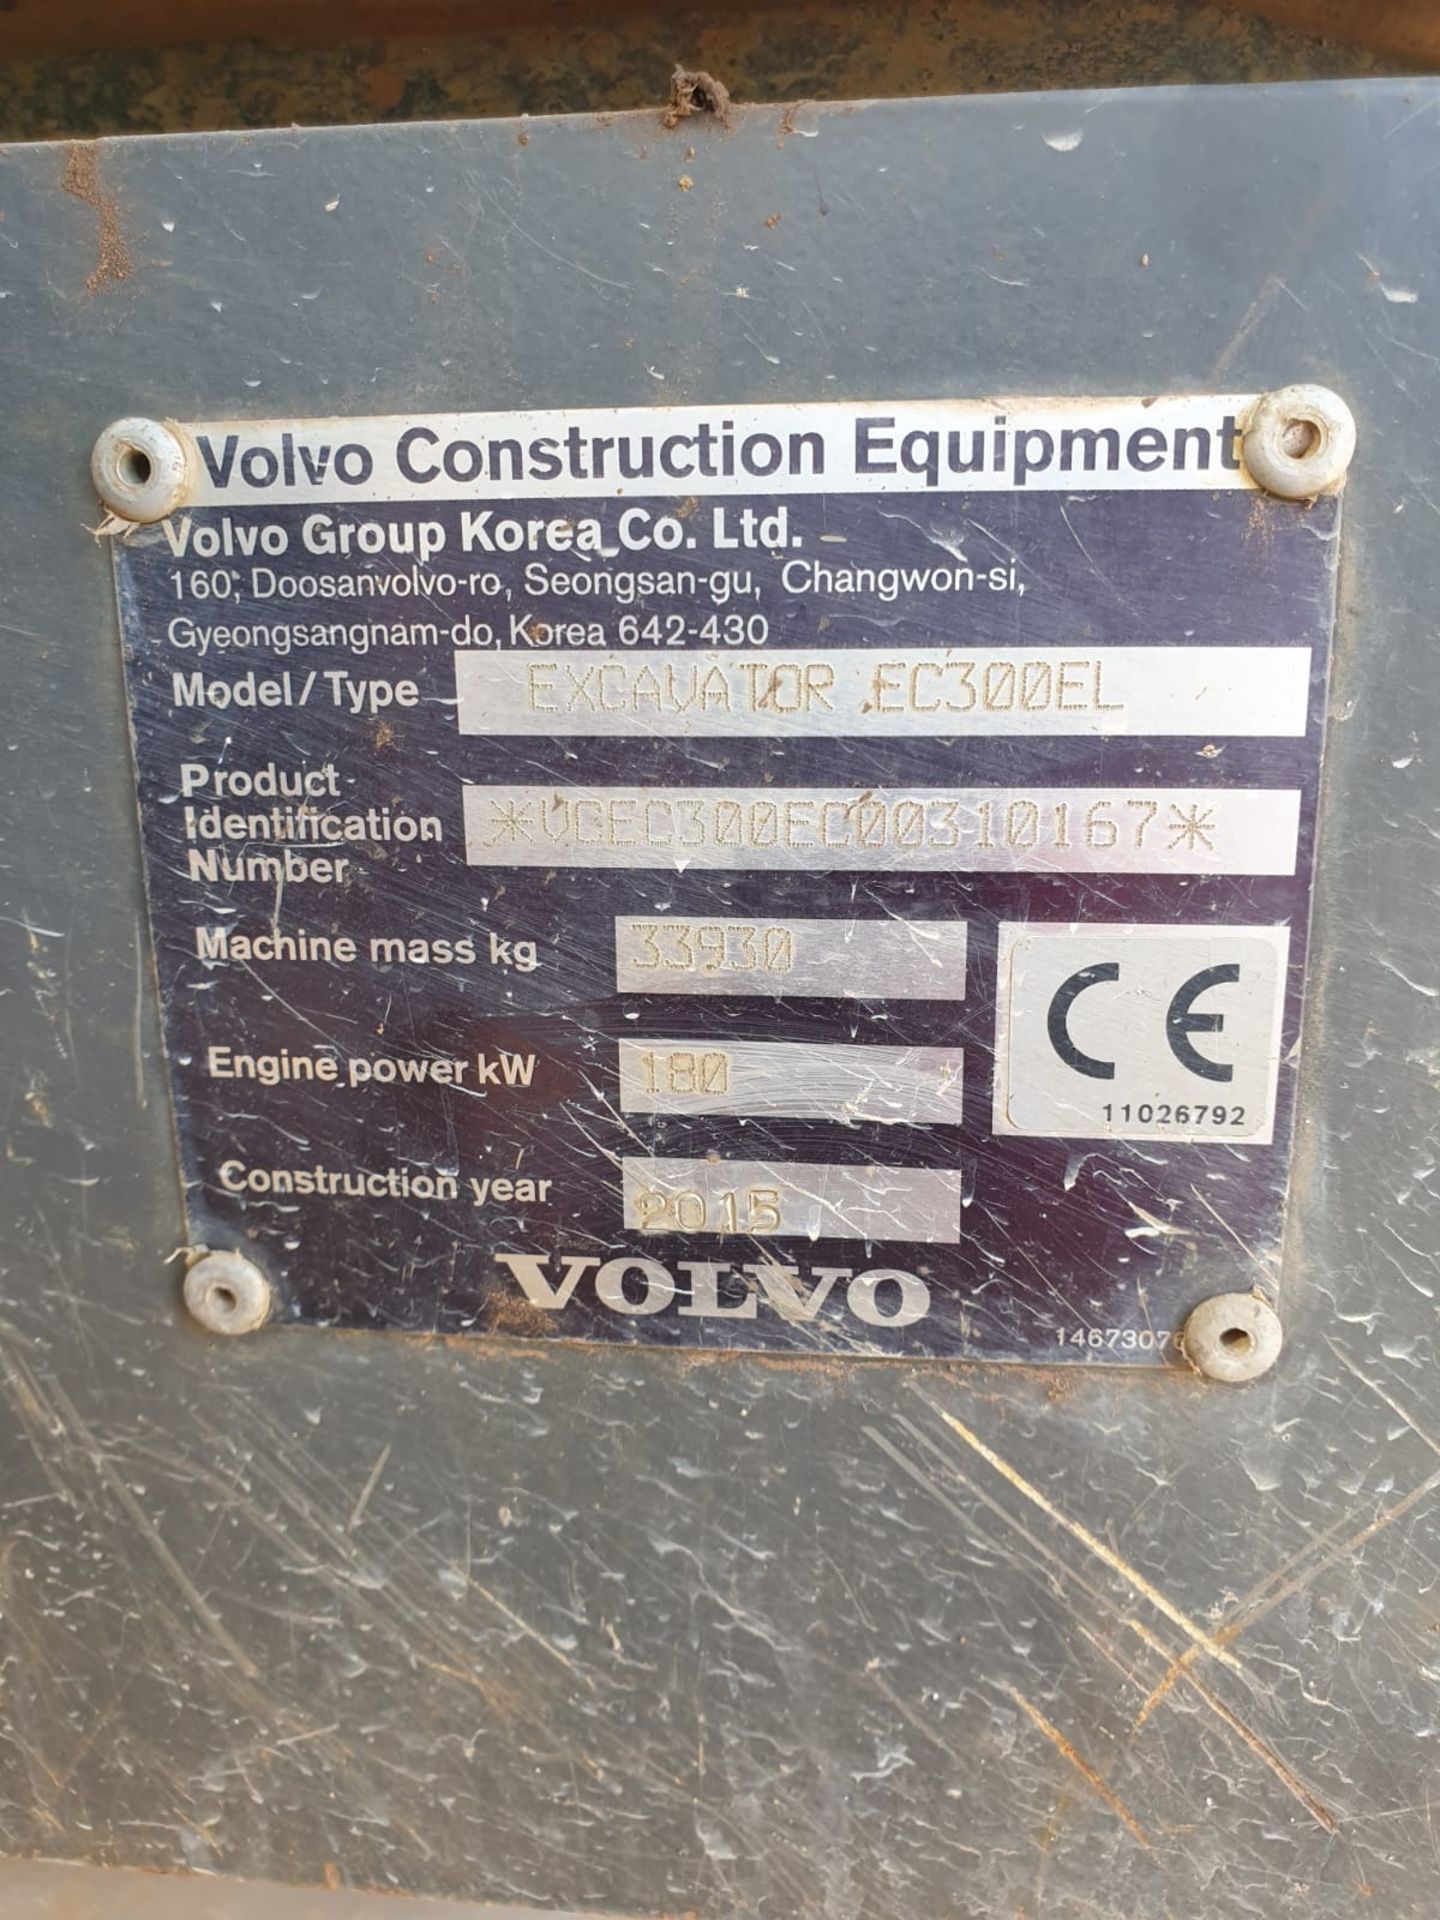 Volvo EC300EL Excavator - Image 21 of 22